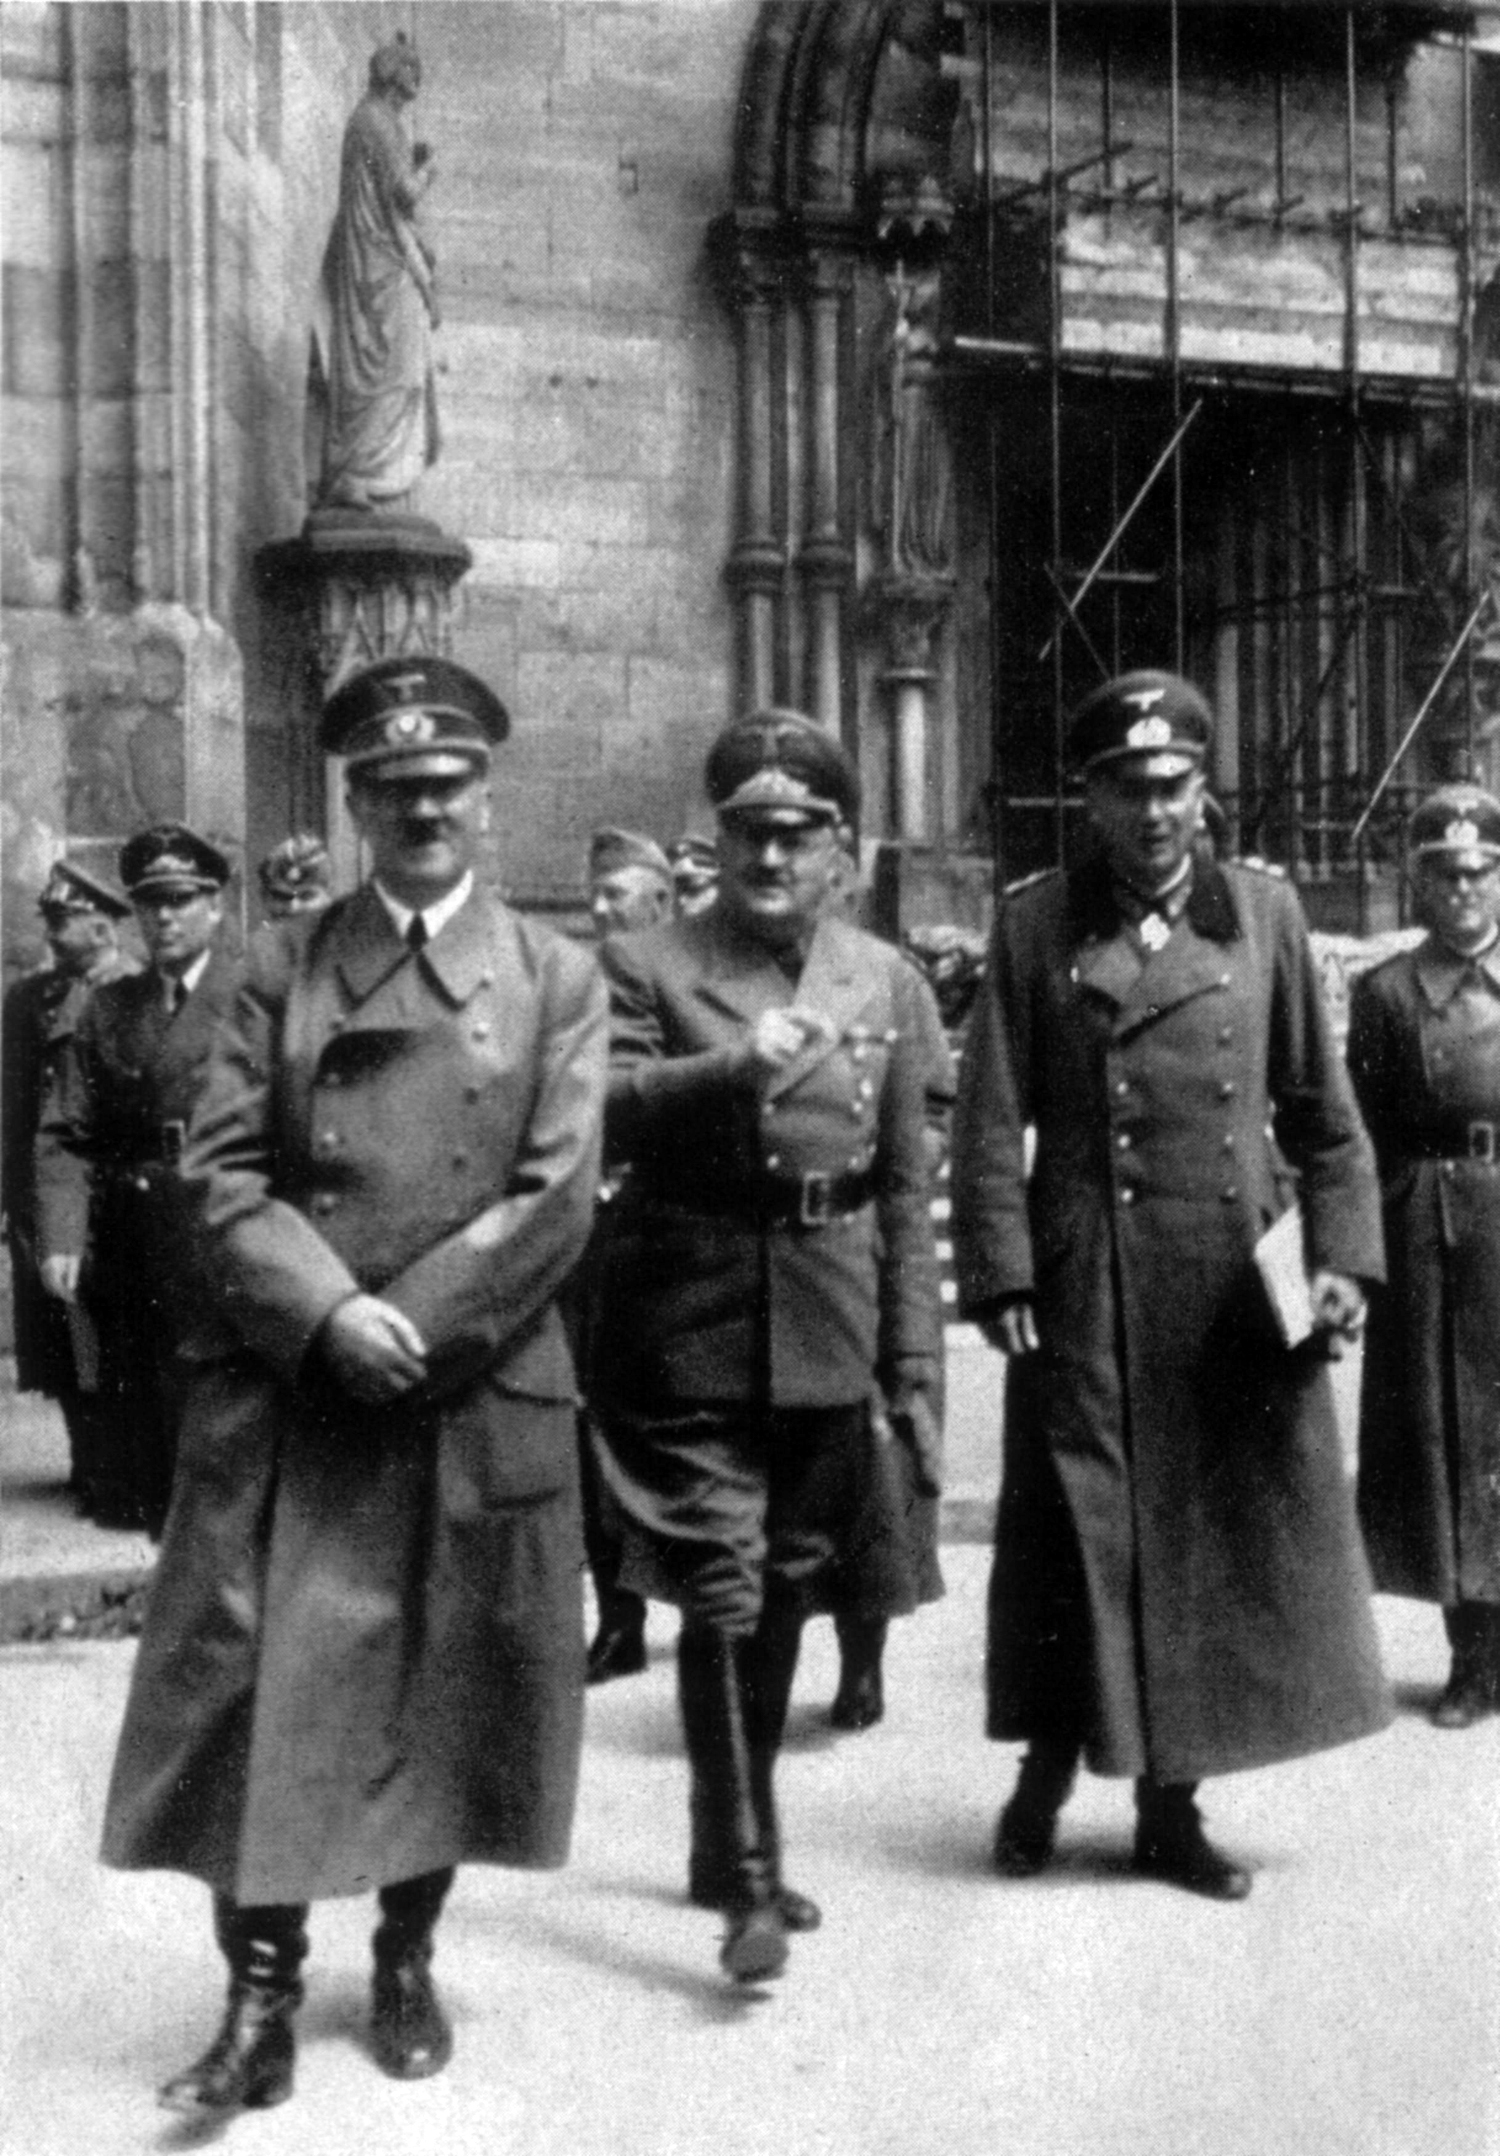 Adolf Hitler visits the Strasbourg cathedral in France